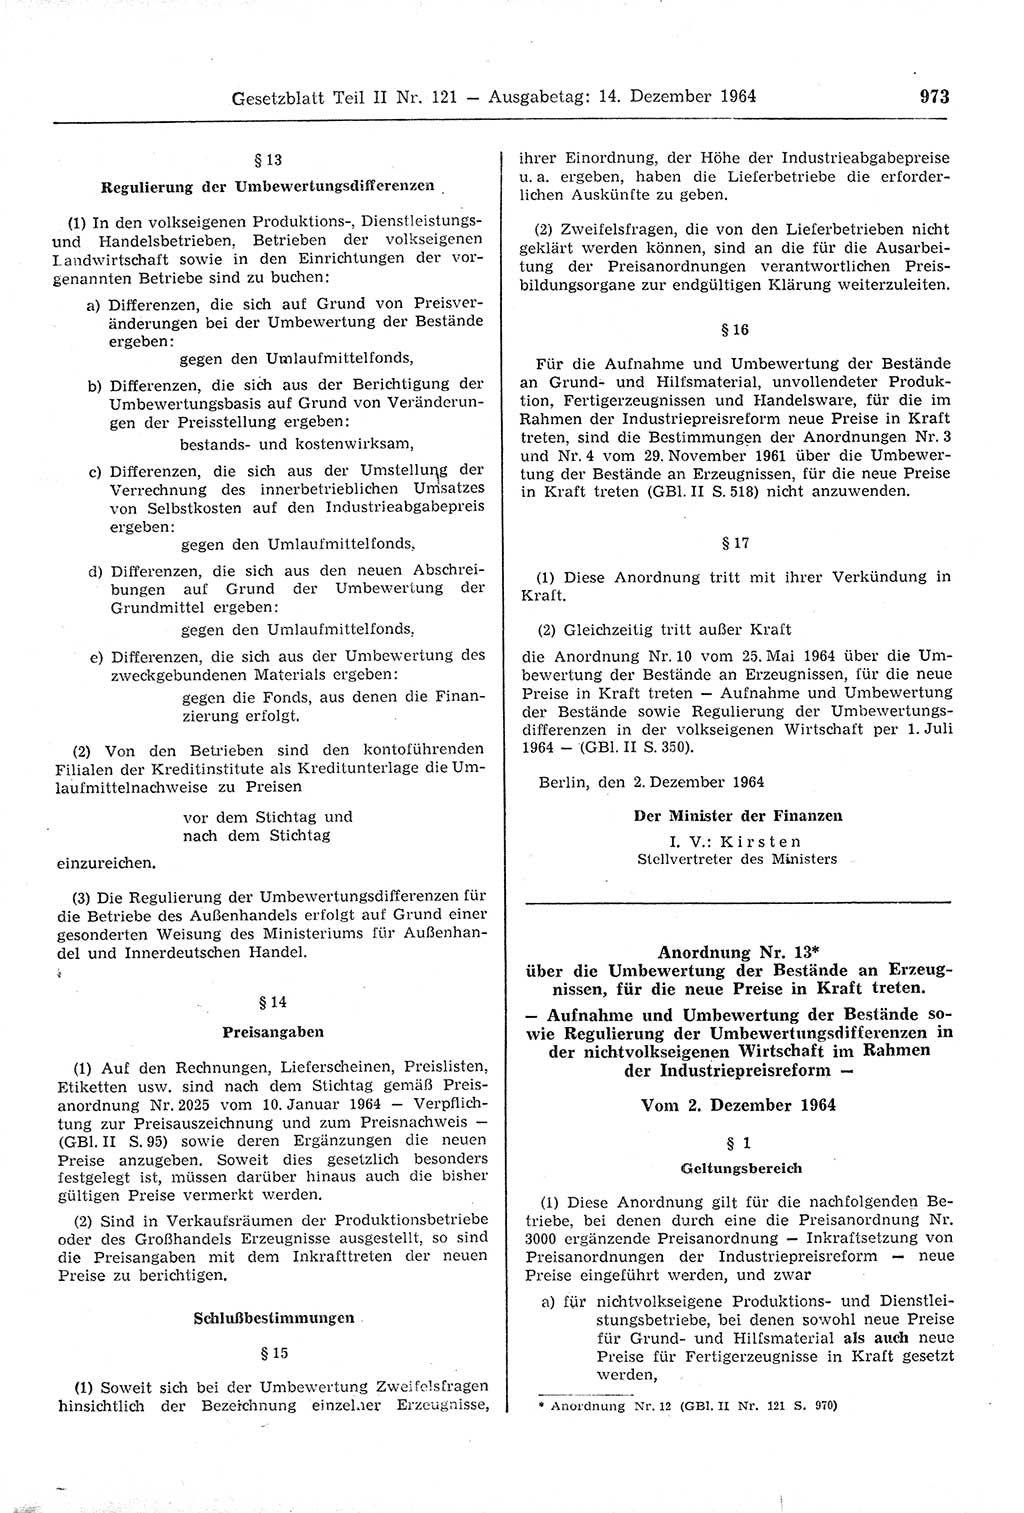 Gesetzblatt (GBl.) der Deutschen Demokratischen Republik (DDR) Teil ⅠⅠ 1964, Seite 973 (GBl. DDR ⅠⅠ 1964, S. 973)